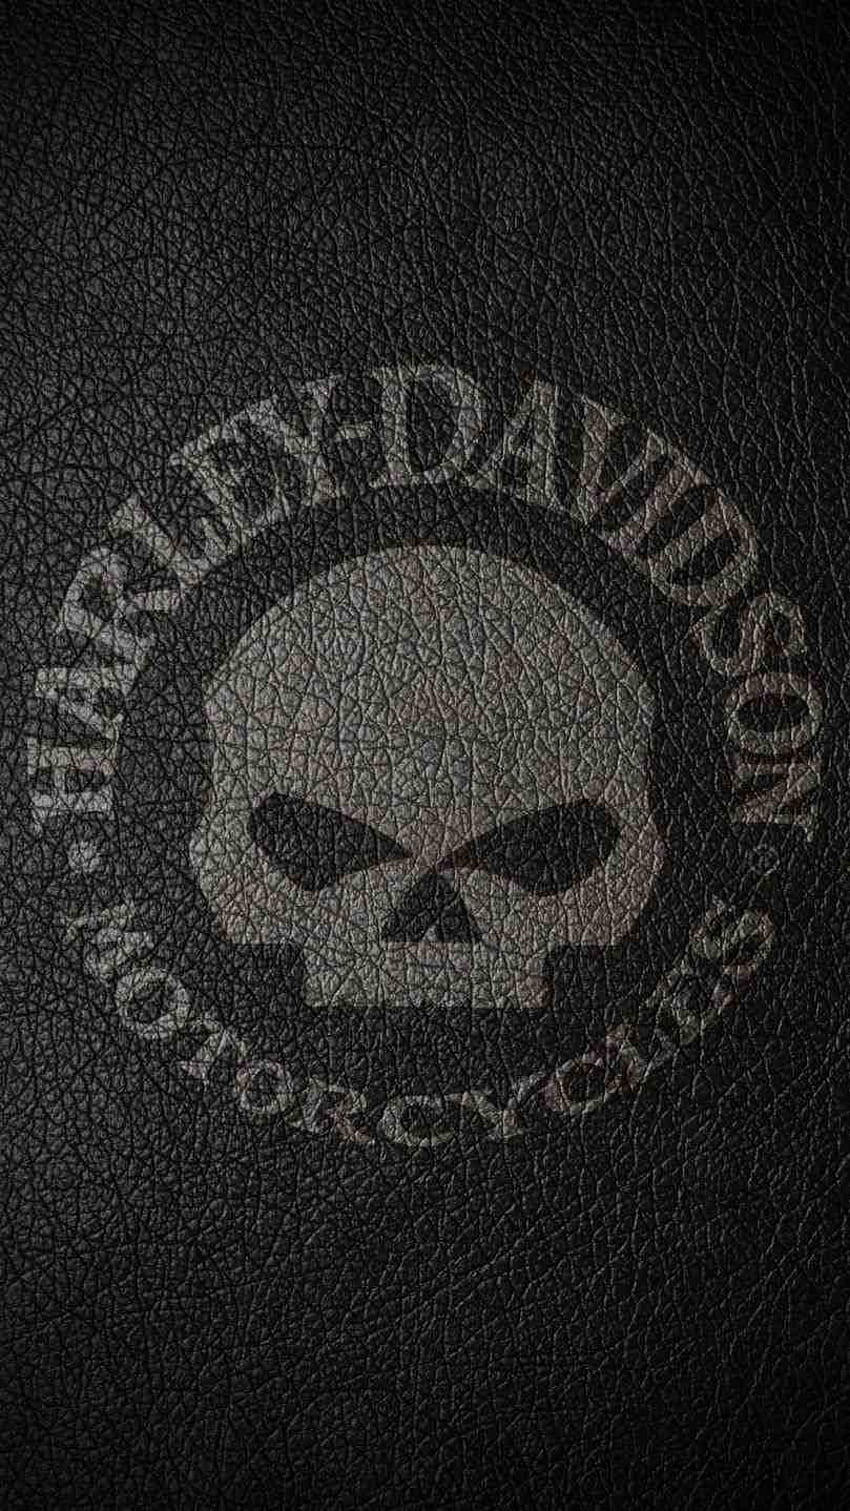 Harley Davidson Emblem, harley davidson logo HD phone wallpaper